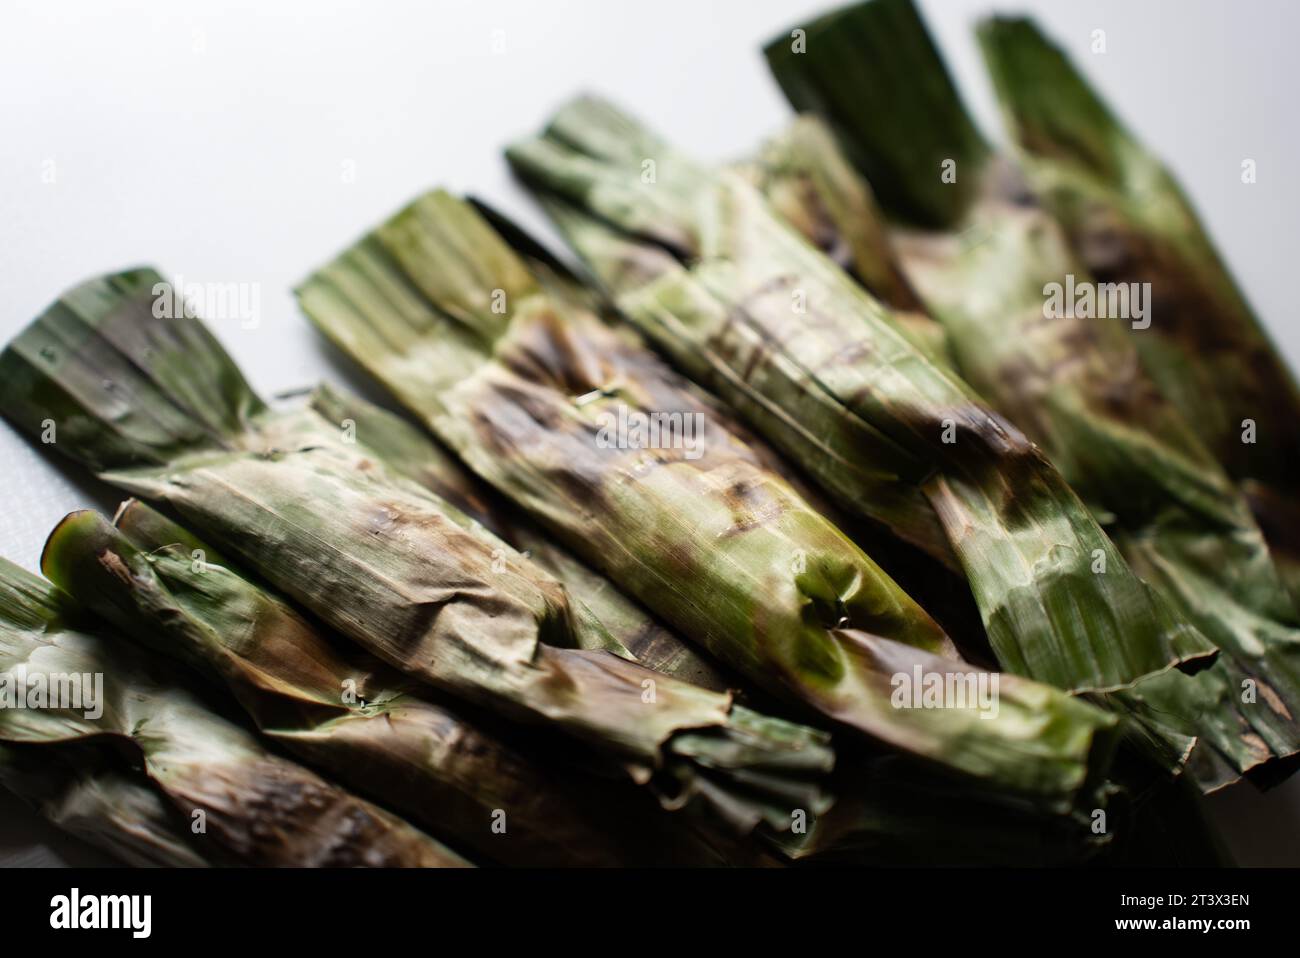 Otak-Otak: Traditionelle Speisen aus Indonesien sind eine Art Snack - gegrillte Fischkuchen mit Bananenblatt Stockfoto